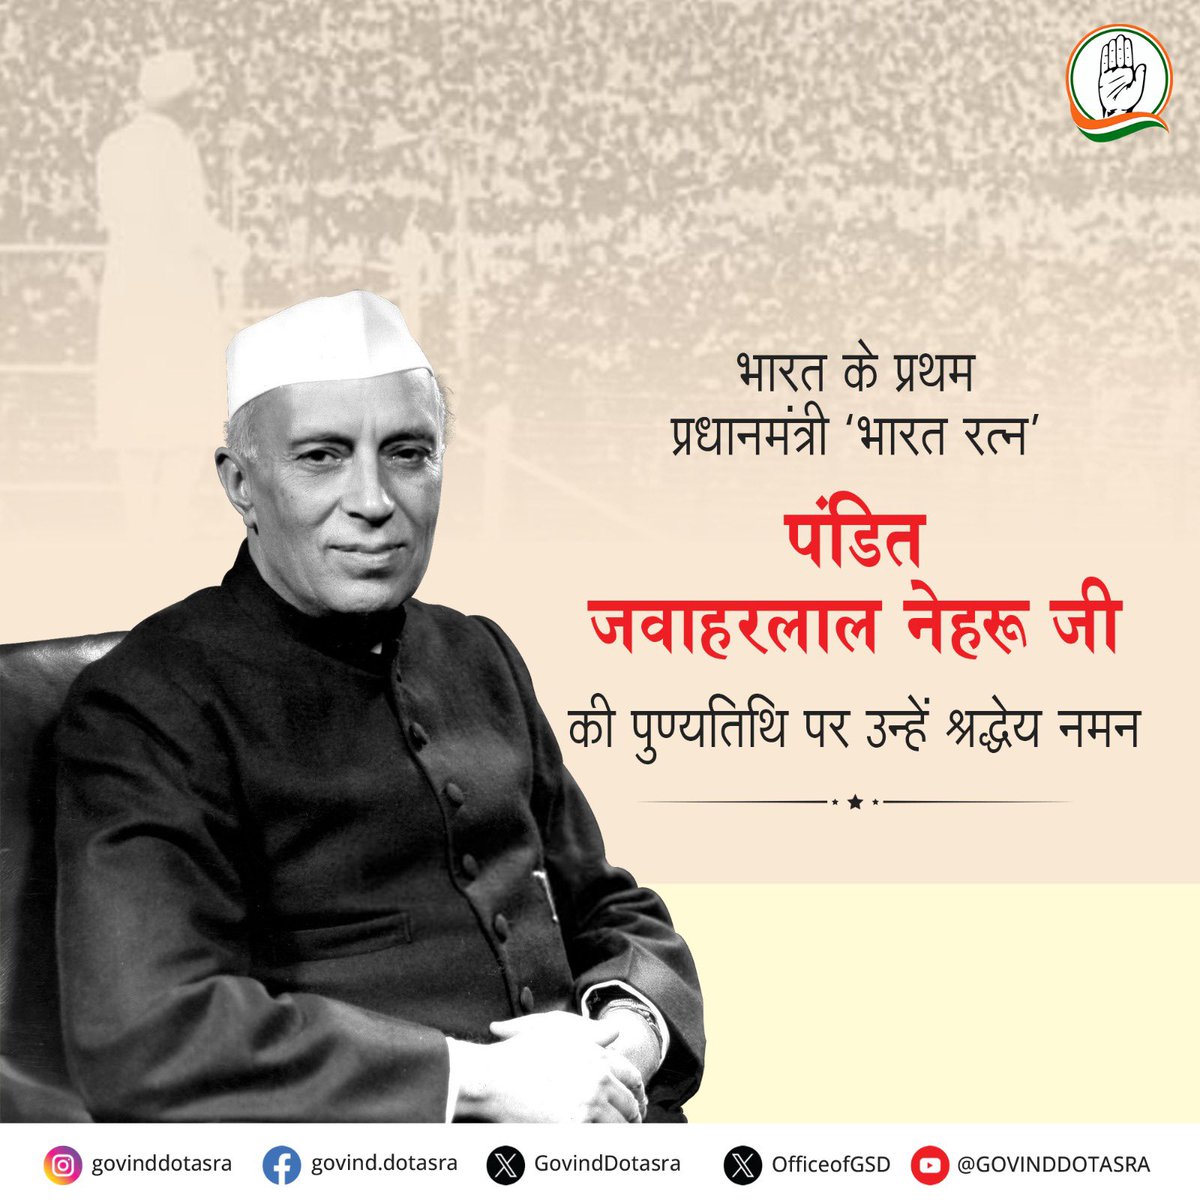 आज़ाद भारत के प्रथम प्रधानमंत्री 'भारत रत्न' स्व. श्री पंडित जवाहरलाल नेहरू जी की पुण्यतिथि पर मैं उन्हें विनम्र श्रद्धांजलि अर्पित करता हूं। नेहरू जी ने आज़ाद भारत को सशक्त बनाने के लिए महत्वपूर्ण एवं ऐतिहासिक कदम उठाये। उनकी योजनाएं एवं विचारधारा आज भी हमारे देश के विकास में